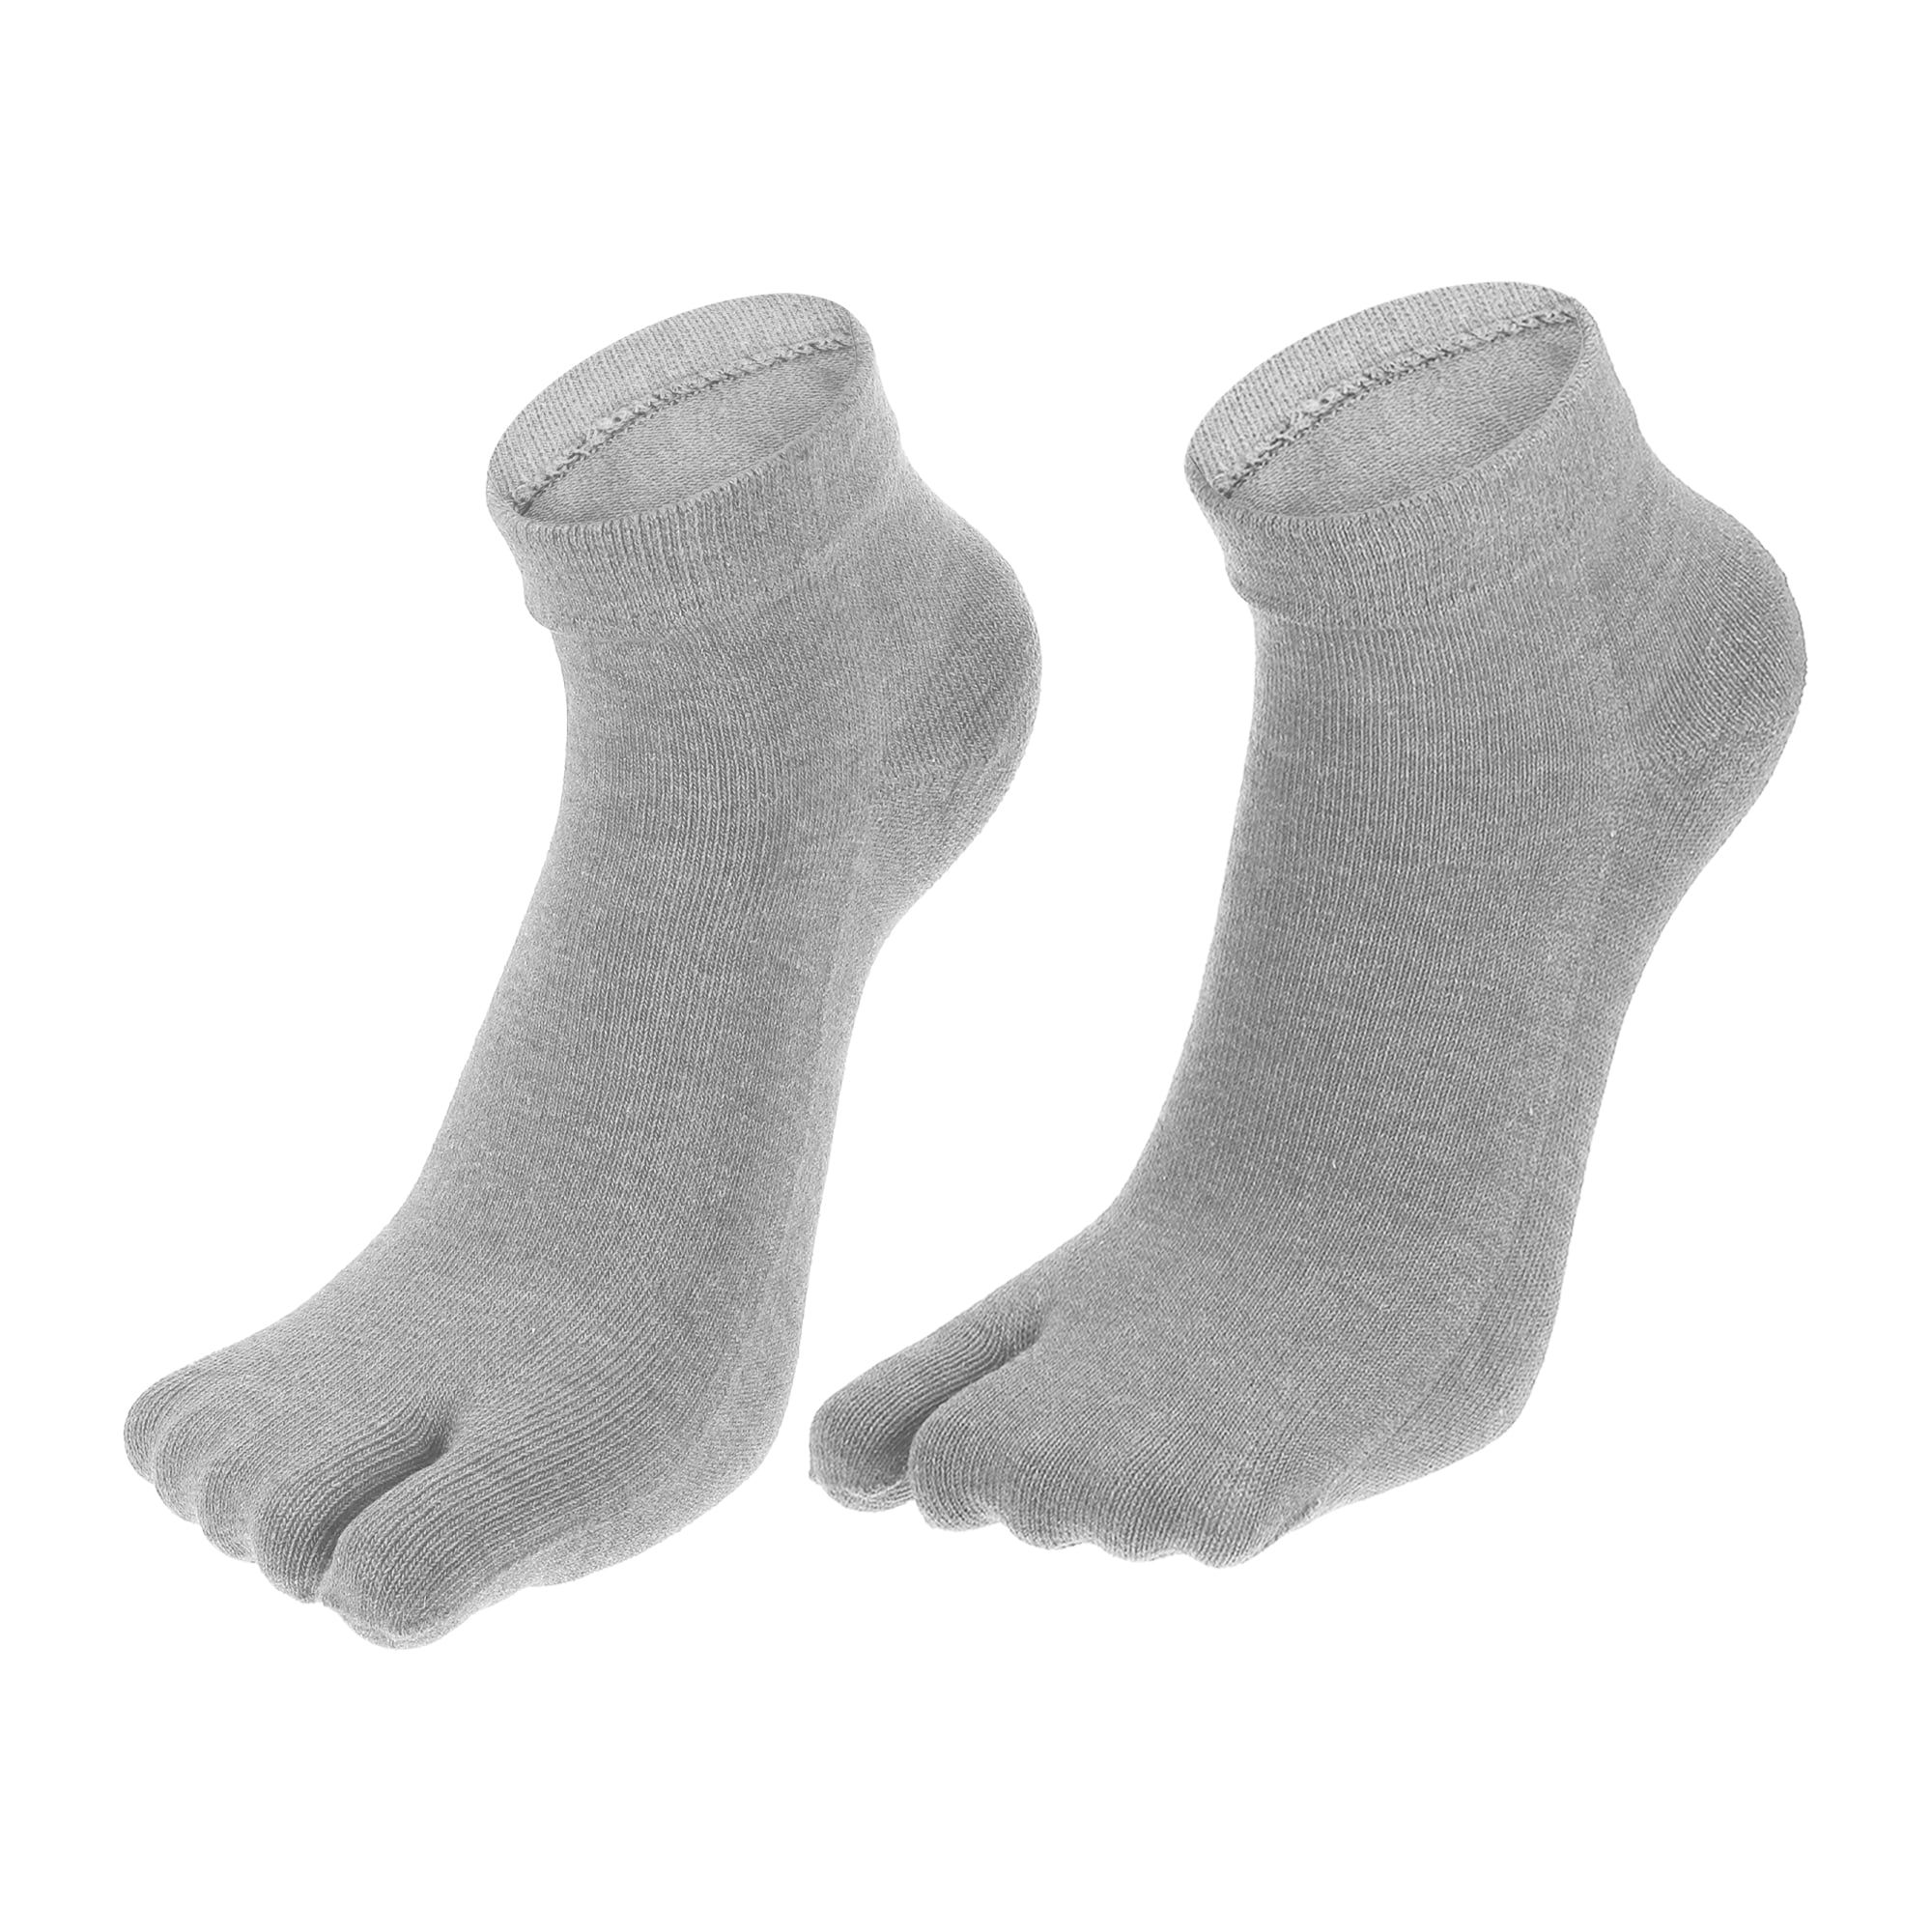 1 par de calcetines de cinco dedos con dedos completos, unisex,  antideslizantes, pegajosos, para uso diario, calcetines para dedos, gris  Unique Bargains calcetines de yoga